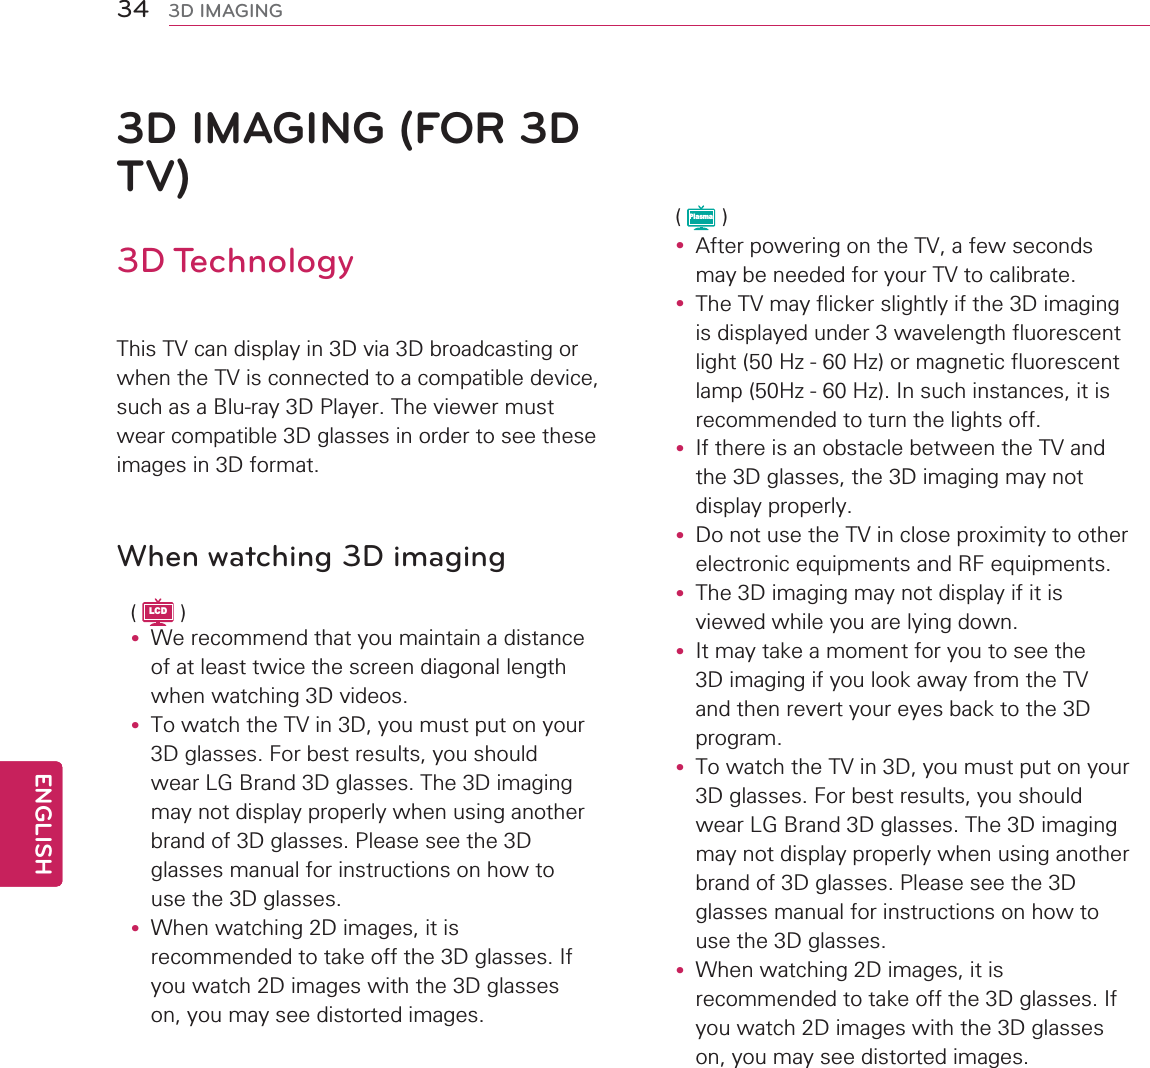 34ENGENGLISH3D IMAGING3D IMAGING (FOR 3D TV)3D Technology7KLV79FDQGLVSOD\LQ&apos;YLD&apos;EURDGFDVWLQJRUZKHQWKH79LVFRQQHFWHGWRDFRPSDWLEOHGHYLFHVXFKDVD%OXUD\&apos;3OD\HU7KHYLHZHUPXVWZHDUFRPSDWLEOH&apos;JODVVHVLQRUGHUWRVHHWKHVHLPDJHVLQ&apos;IRUPDWWhen watching 3D imagingLCDy :HUHFRPPHQGWKDW\RXPDLQWDLQDGLVWDQFHRIDWOHDVWWZLFHWKHVFUHHQGLDJRQDOOHQJWKZKHQZDWFKLQJ&apos;YLGHRVy 7RZDWFKWKH79LQ&apos;\RXPXVWSXWRQ\RXU&apos;JODVVHV)RUEHVWUHVXOWV\RXVKRXOGZHDU/*%UDQG&apos;JODVVHV7KH&apos;LPDJLQJPD\QRWGLVSOD\SURSHUO\ZKHQXVLQJDQRWKHUEUDQGRI&apos;JODVVHV3OHDVHVHHWKH&apos;JODVVHVPDQXDOIRULQVWUXFWLRQVRQKRZWRXVHWKH&apos;JODVVHVy :KHQZDWFKLQJ&apos;LPDJHVLWLVUHFRPPHQGHGWRWDNHRIIWKH&apos;JODVVHV,I\RXZDWFK&apos;LPDJHVZLWKWKH&apos;JODVVHVRQ\RXPD\VHHGLVWRUWHGLPDJHVPlasmay $IWHUSRZHULQJRQWKH79DIHZVHFRQGVPD\EHQHHGHGIRU\RXU79WRFDOLEUDWHy 7KH79PD\IOLFNHUVOLJKWO\LIWKH&apos;LPDJLQJLVGLVSOD\HGXQGHUZDYHOHQJWKIOXRUHVFHQWOLJKW+]+]RUPDJQHWLFIOXRUHVFHQWODPS+]+],QVXFKLQVWDQFHVLWLVUHFRPPHQGHGWRWXUQWKHOLJKWVRIIy ,IWKHUHLVDQREVWDFOHEHWZHHQWKH79DQGWKH&apos;JODVVHVWKH&apos;LPDJLQJPD\QRWGLVSOD\SURSHUO\y &apos;RQRWXVHWKH79LQFORVHSUR[LPLW\WRRWKHUHOHFWURQLFHTXLSPHQWVDQG5)HTXLSPHQWVy 7KH&apos;LPDJLQJPD\QRWGLVSOD\LILWLVYLHZHGZKLOH\RXDUHO\LQJGRZQy ,WPD\WDNHDPRPHQWIRU\RXWRVHHWKH&apos;LPDJLQJLI\RXORRNDZD\IURPWKH79DQGWKHQUHYHUW\RXUH\HVEDFNWRWKH&apos;SURJUDPy 7RZDWFKWKH79LQ&apos;\RXPXVWSXWRQ\RXU&apos;JODVVHV)RUEHVWUHVXOWV\RXVKRXOGZHDU/*%UDQG&apos;JODVVHV7KH&apos;LPDJLQJPD\QRWGLVSOD\SURSHUO\ZKHQXVLQJDQRWKHUEUDQGRI&apos;JODVVHV3OHDVHVHHWKH&apos;JODVVHVPDQXDOIRULQVWUXFWLRQVRQKRZWRXVHWKH&apos;JODVVHVy :KHQZDWFKLQJ&apos;LPDJHVLWLVUHFRPPHQGHGWRWDNHRIIWKH&apos;JODVVHV,I\RXZDWFK&apos;LPDJHVZLWKWKH&apos;JODVVHVRQ\RXPD\VHHGLVWRUWHGLPDJHV